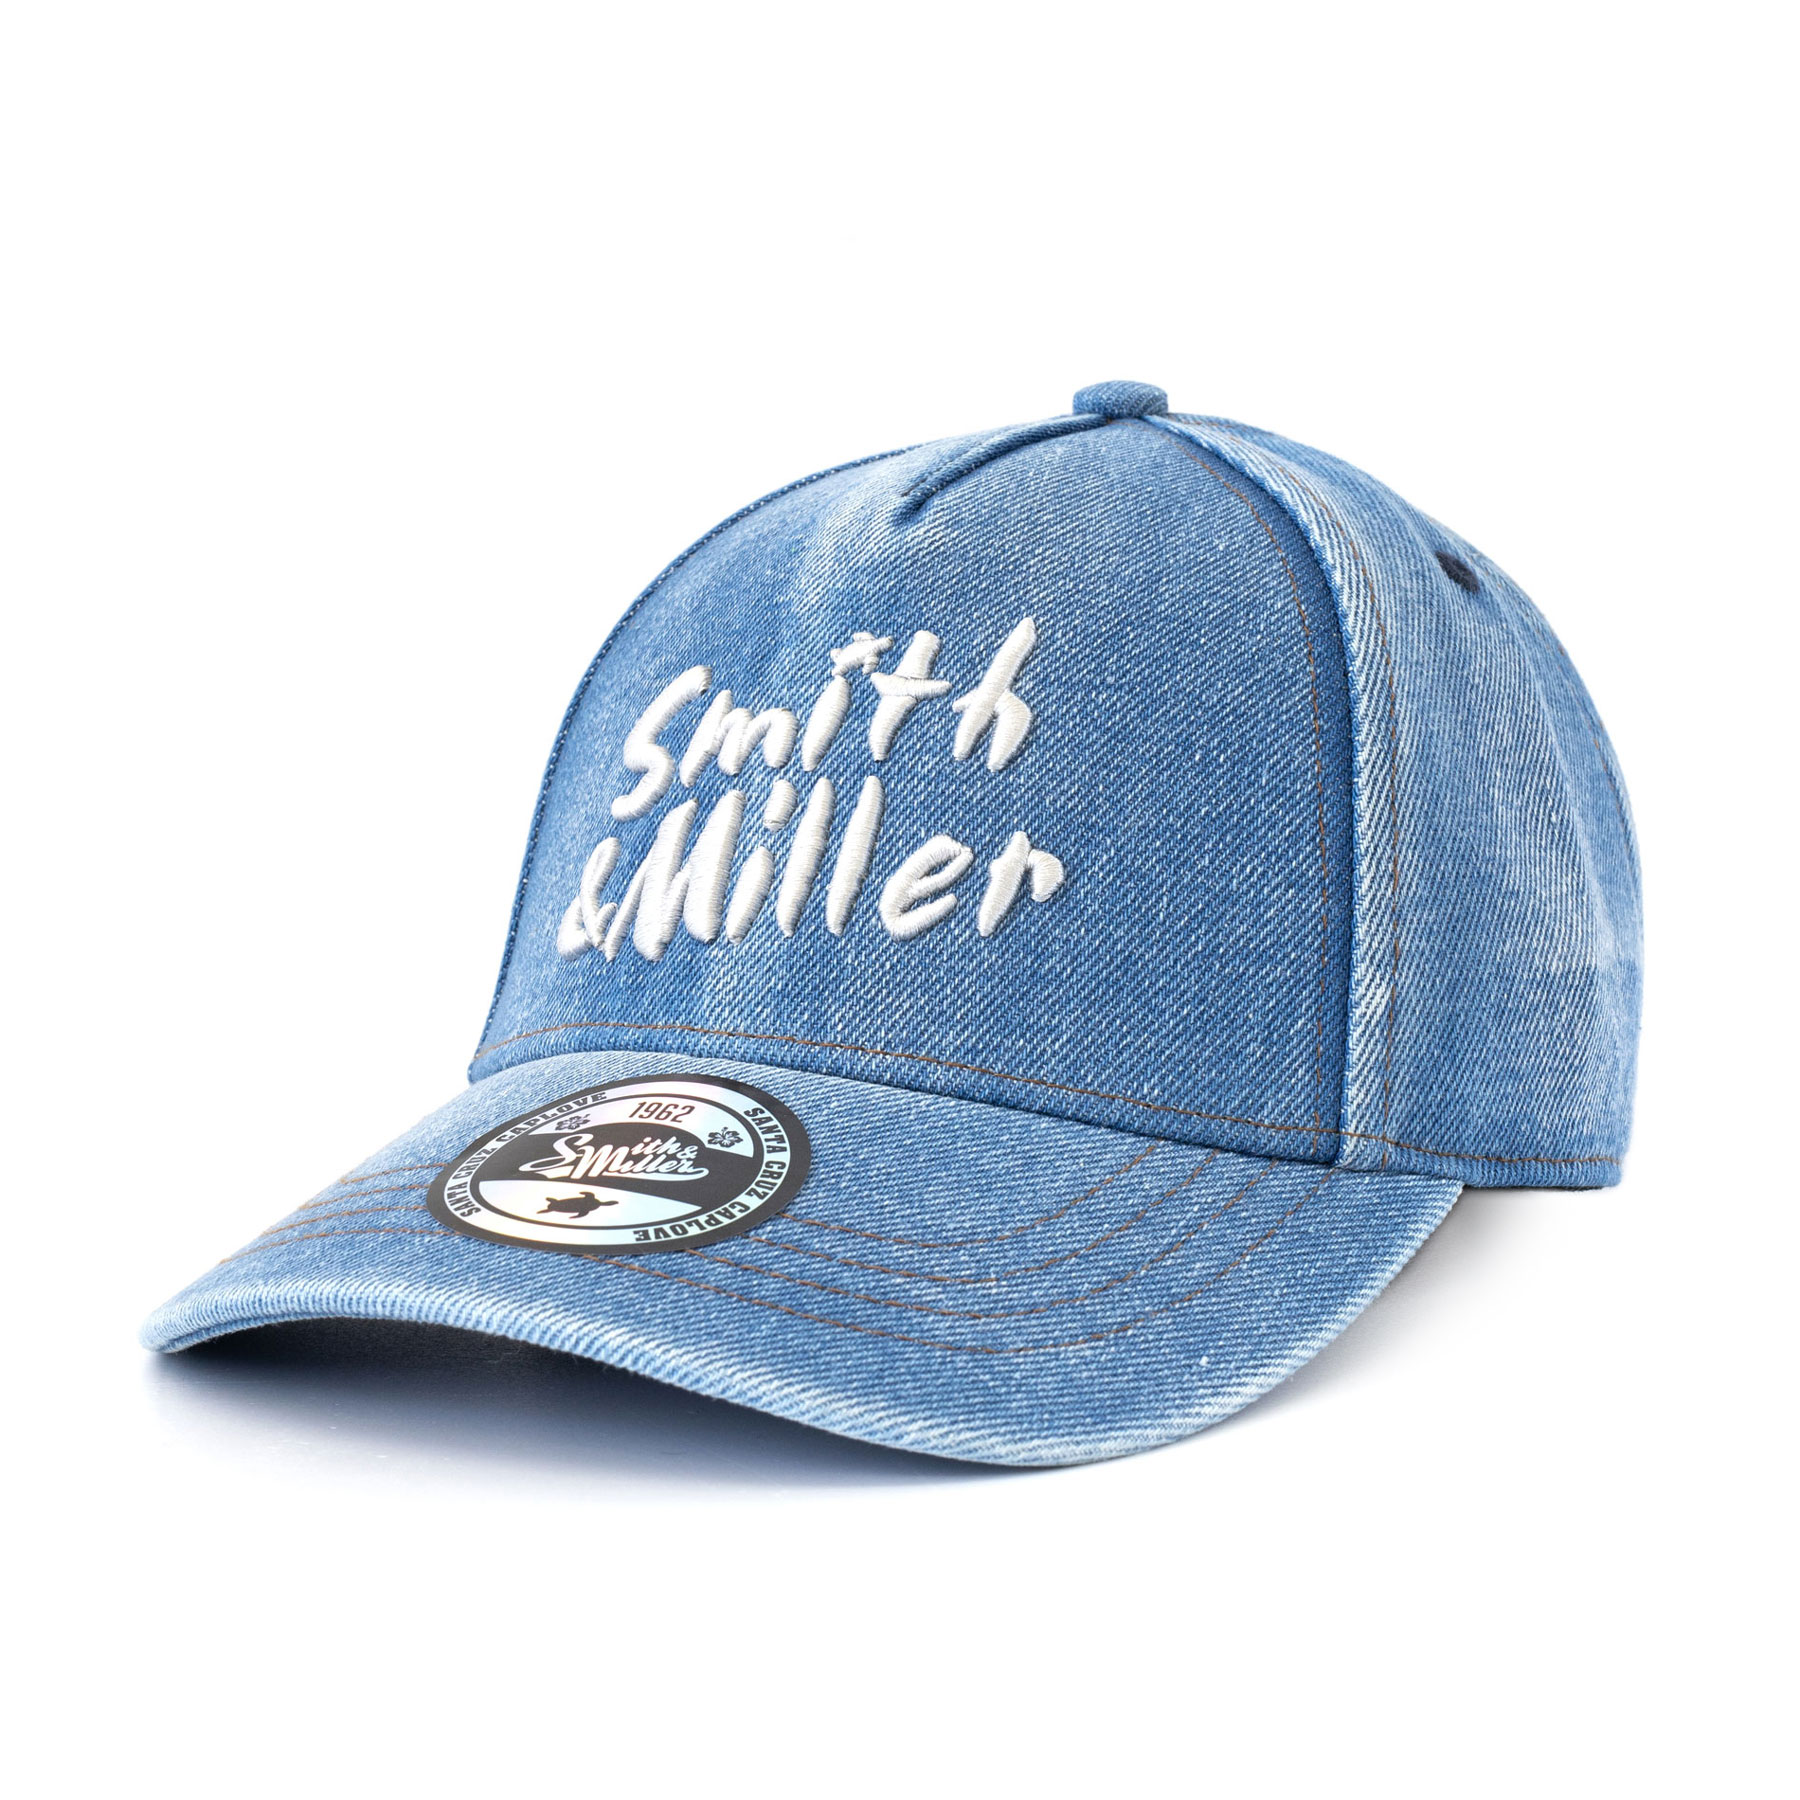 Smith & Miller Veto Unisex  Curved Cap, lt. blue - denim